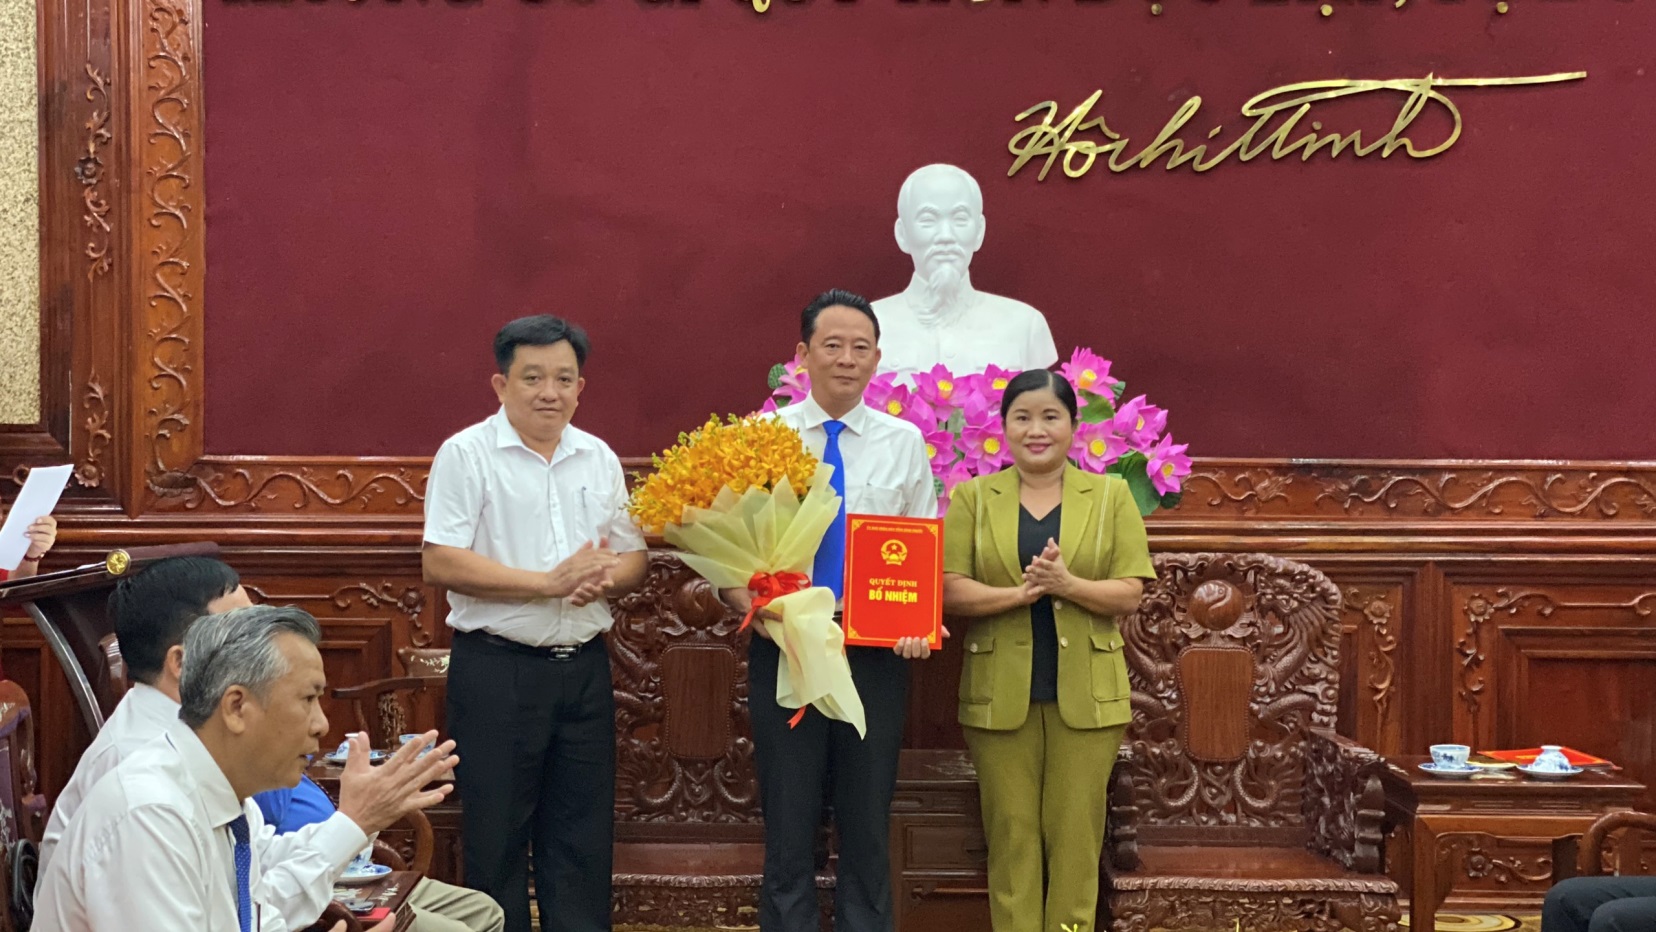 Phó Bí thư, Chủ tịch UBND tỉnh Trần Tuệ Hiền trao Quyết định điều động Trưởng Ban Dân tộc Lý Trọng Nhân